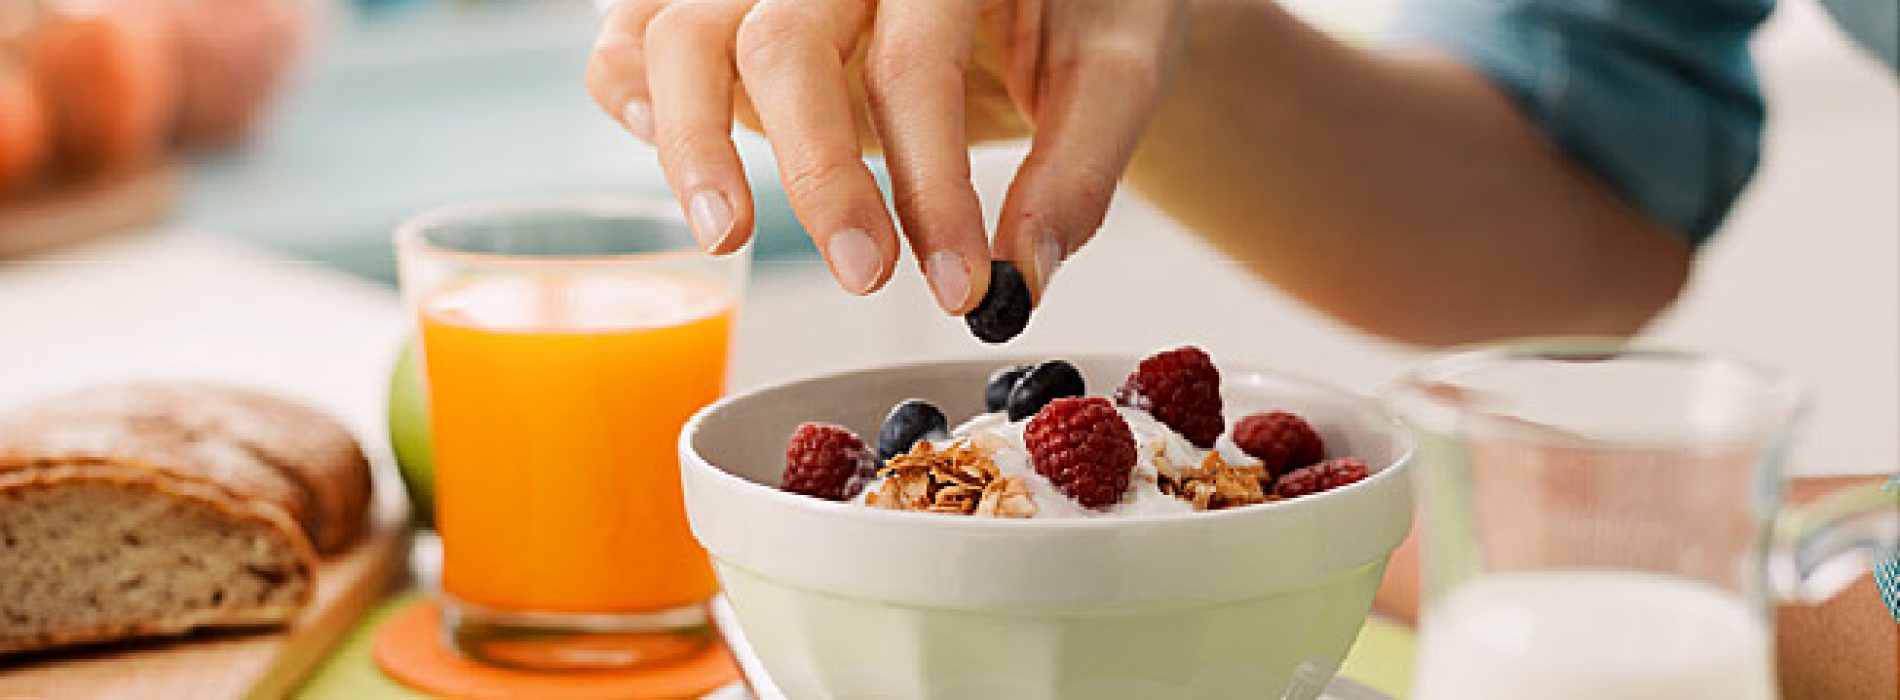 Onderzoekers adviseren: Eet elke dag een gezond ontbijt om uw risico op diabetes type 2 te verminderen